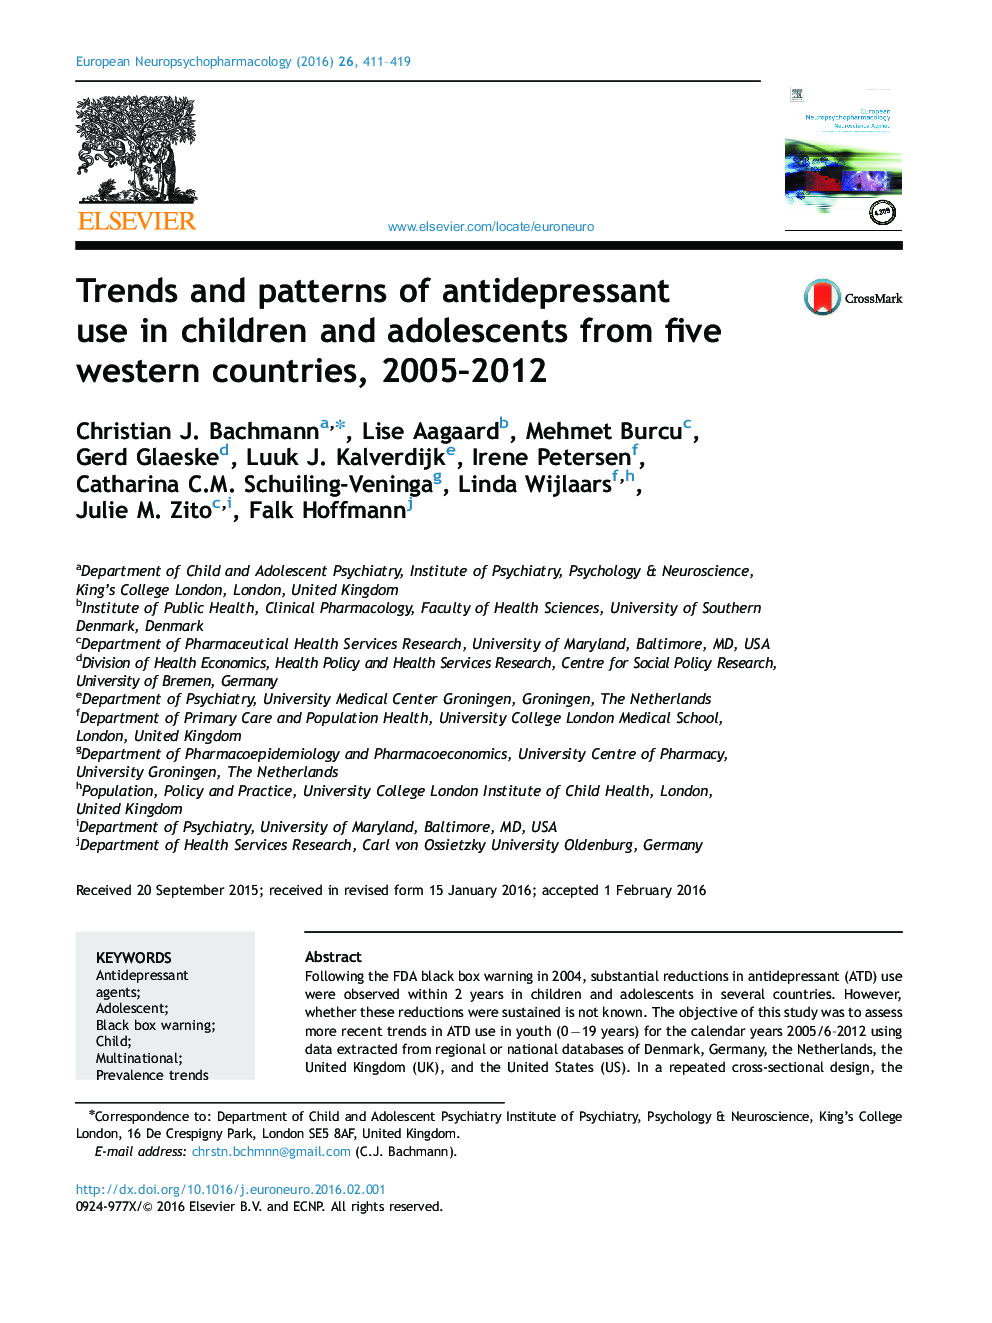 روند و الگوهای استفاده از داروهای ضد افسردگی در کودکان و نوجوانان از پنج کشور غربی، 2005-2012 